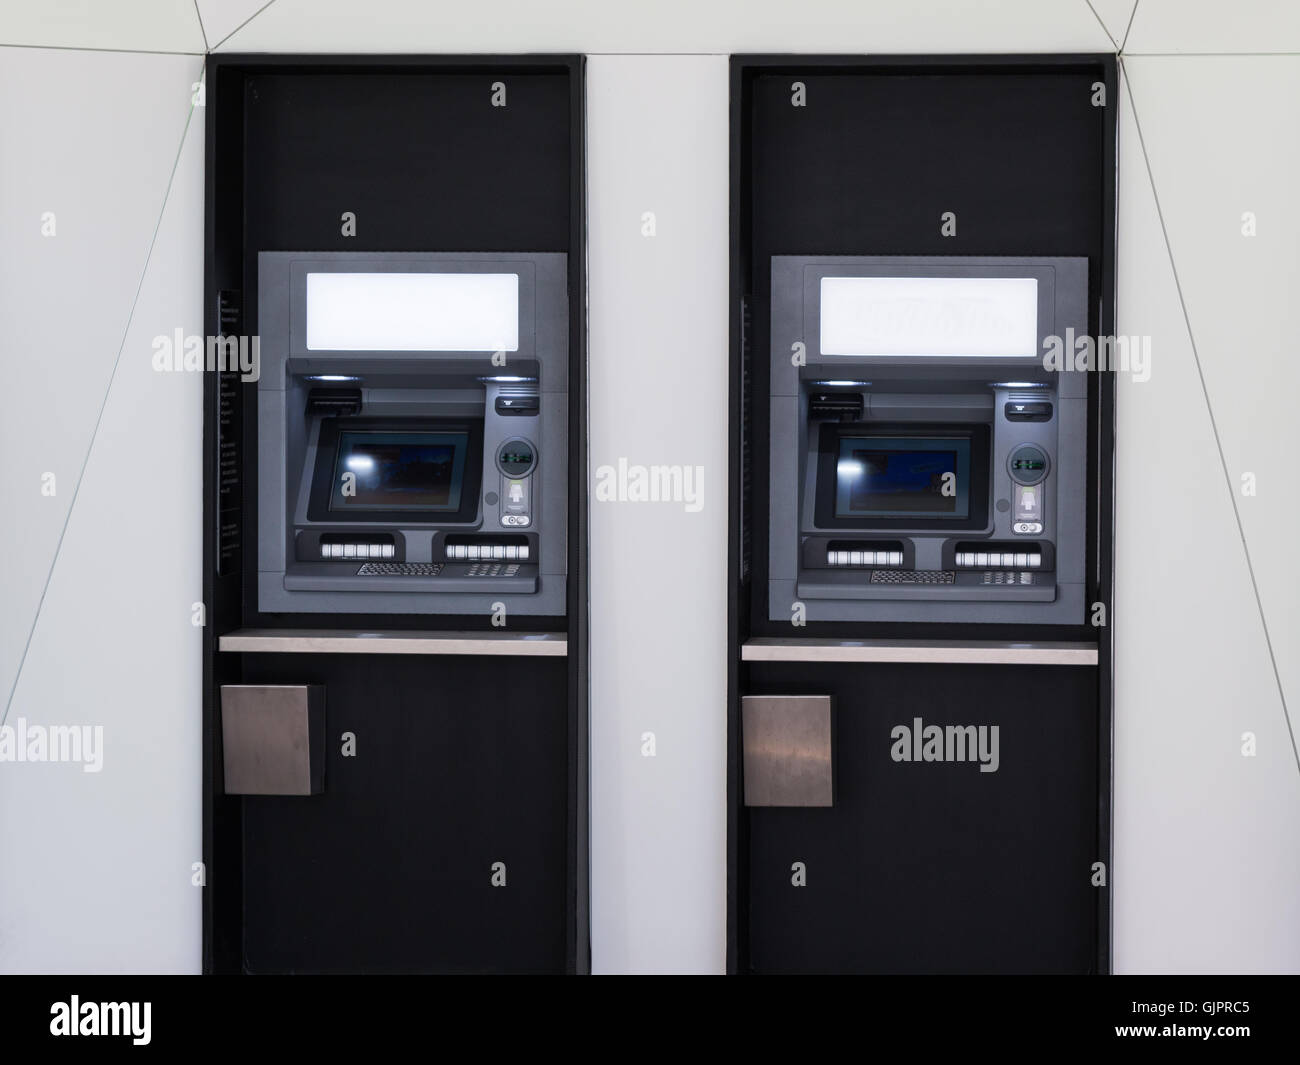 Rangée de distributeur automatique, distributeur automatique pour retirer de l'argent Banque D'Images